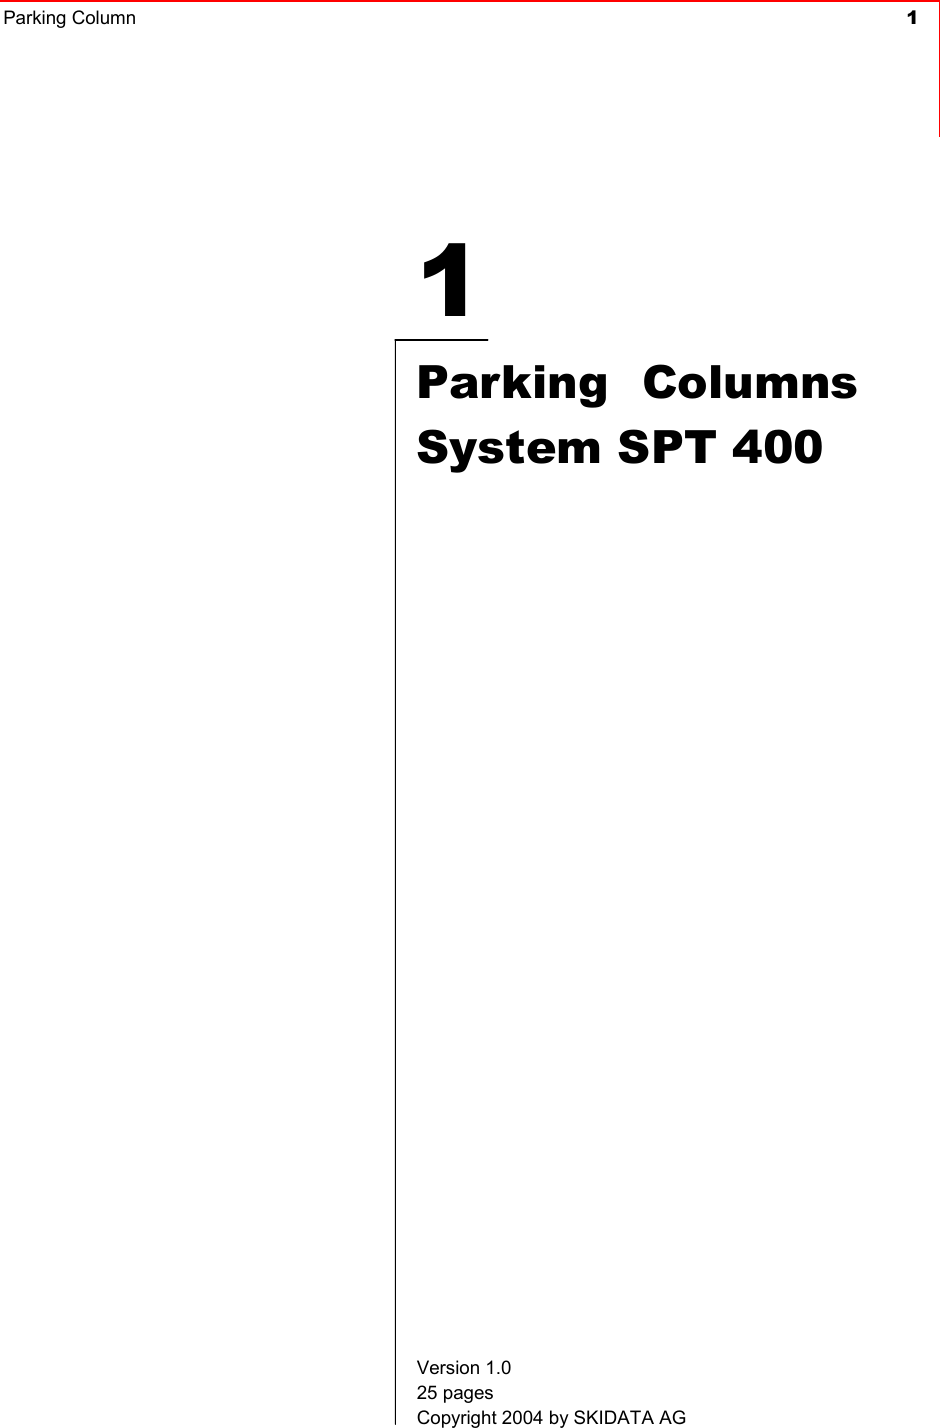 Parking Column  11Parking ColumnsSystem SPT 400Version 1.0 25 pages Copyright 2004 by SKIDATA AG 